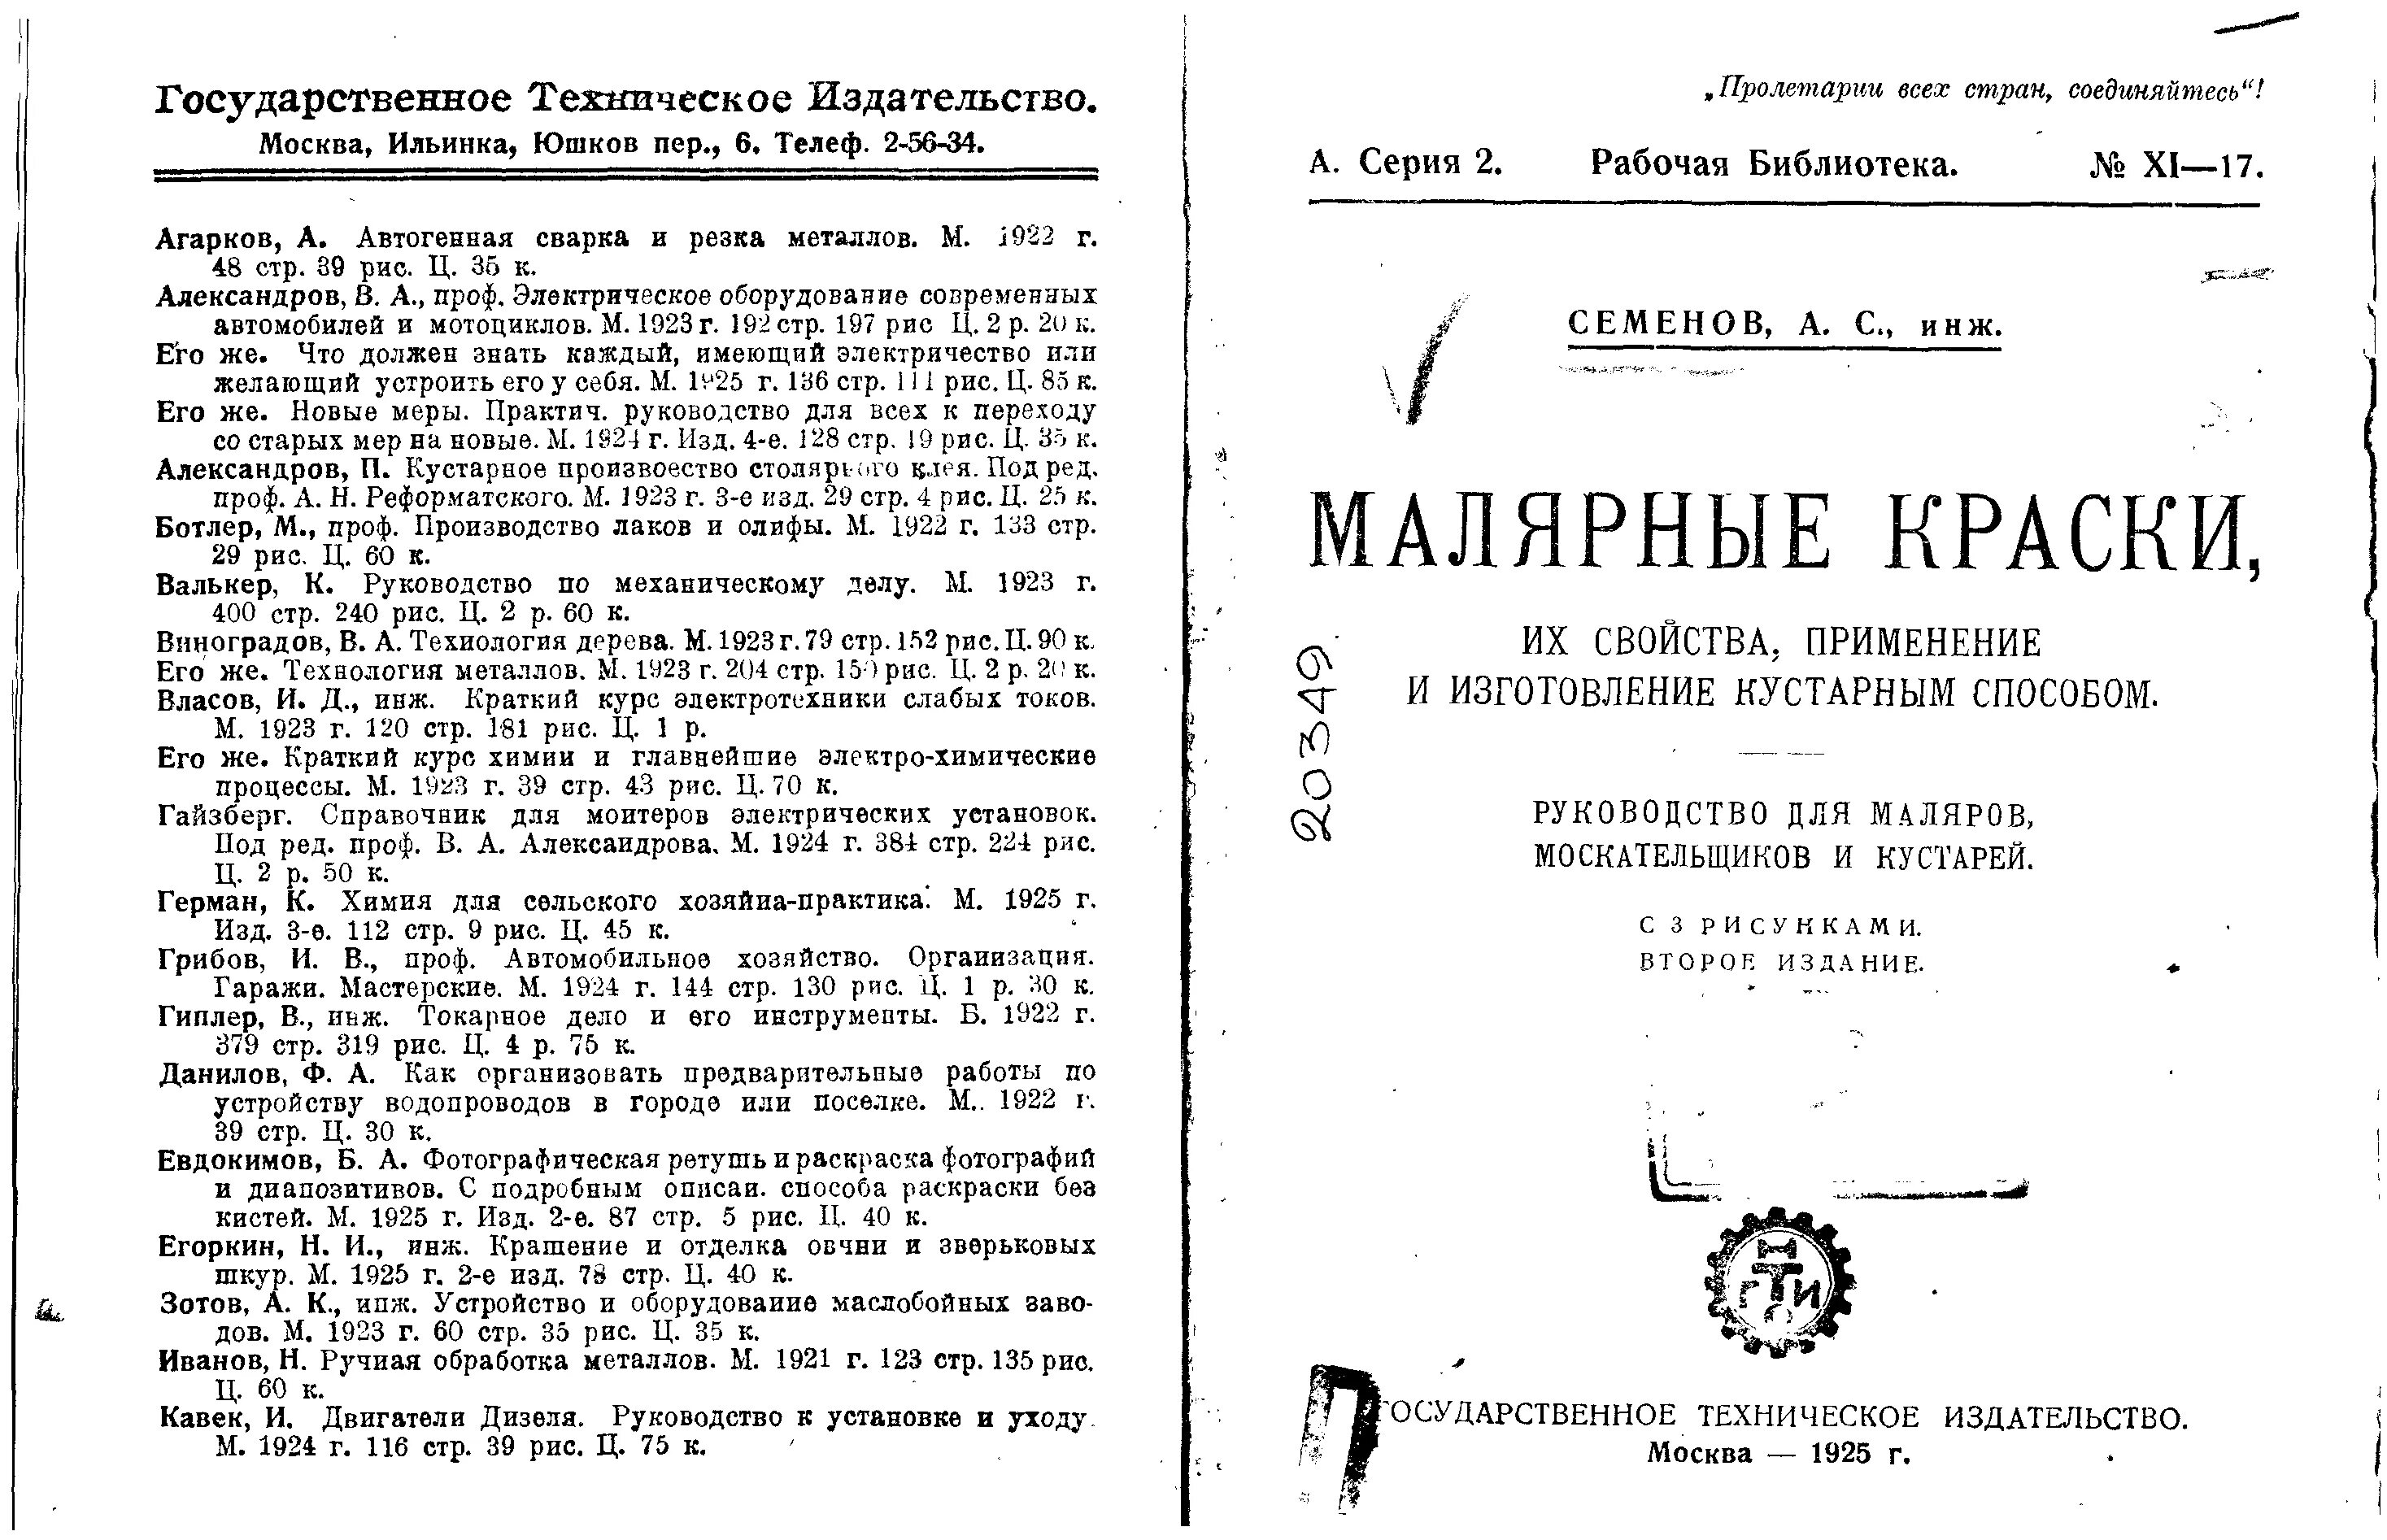 Руководство по кустарному делу. Справочник кустаря 1931.